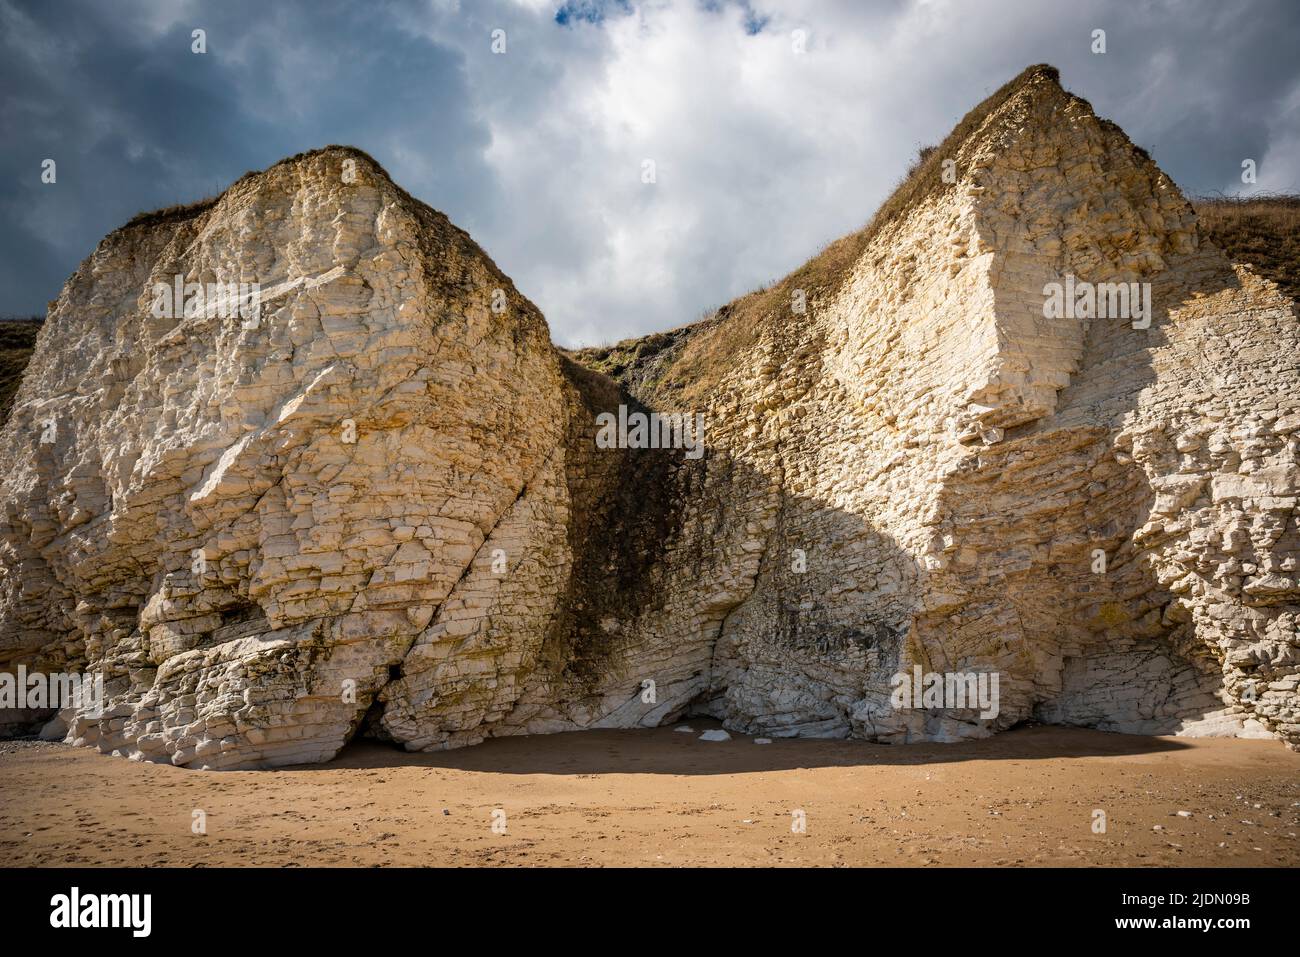 Les falaises de craie de Flamborough Head dans l'East Yorkshire, Royaume-Uni Banque D'Images